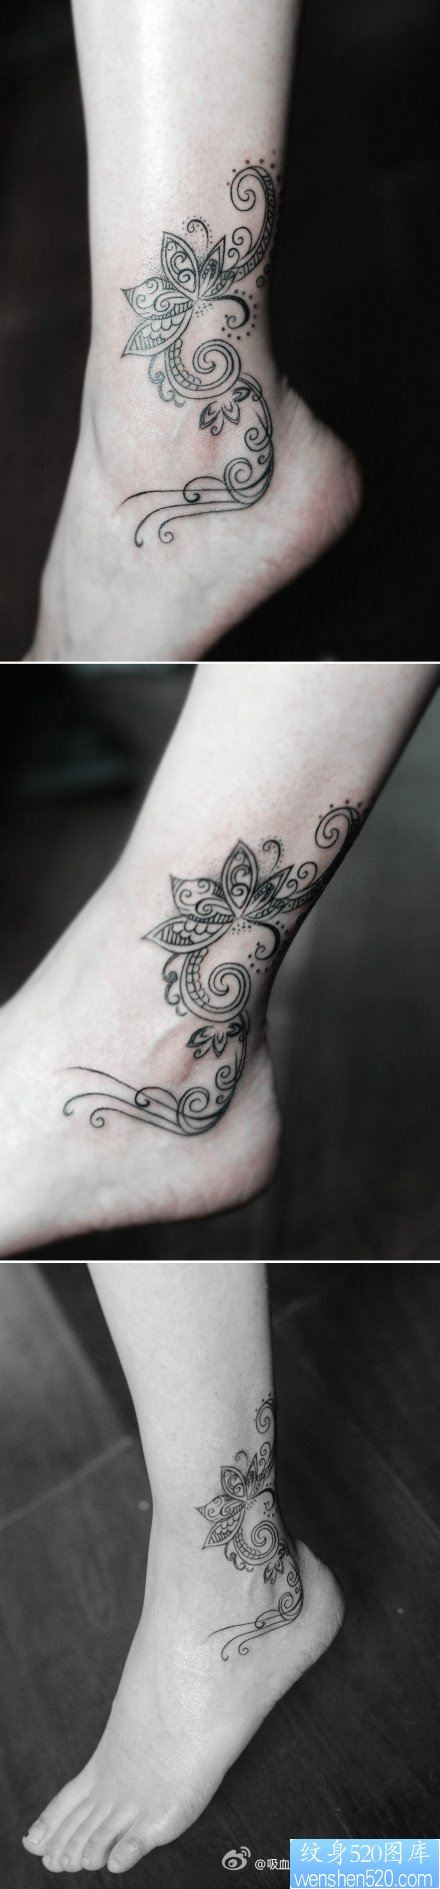 女性脚踝处潮流精美的莲花藤蔓纹身图片